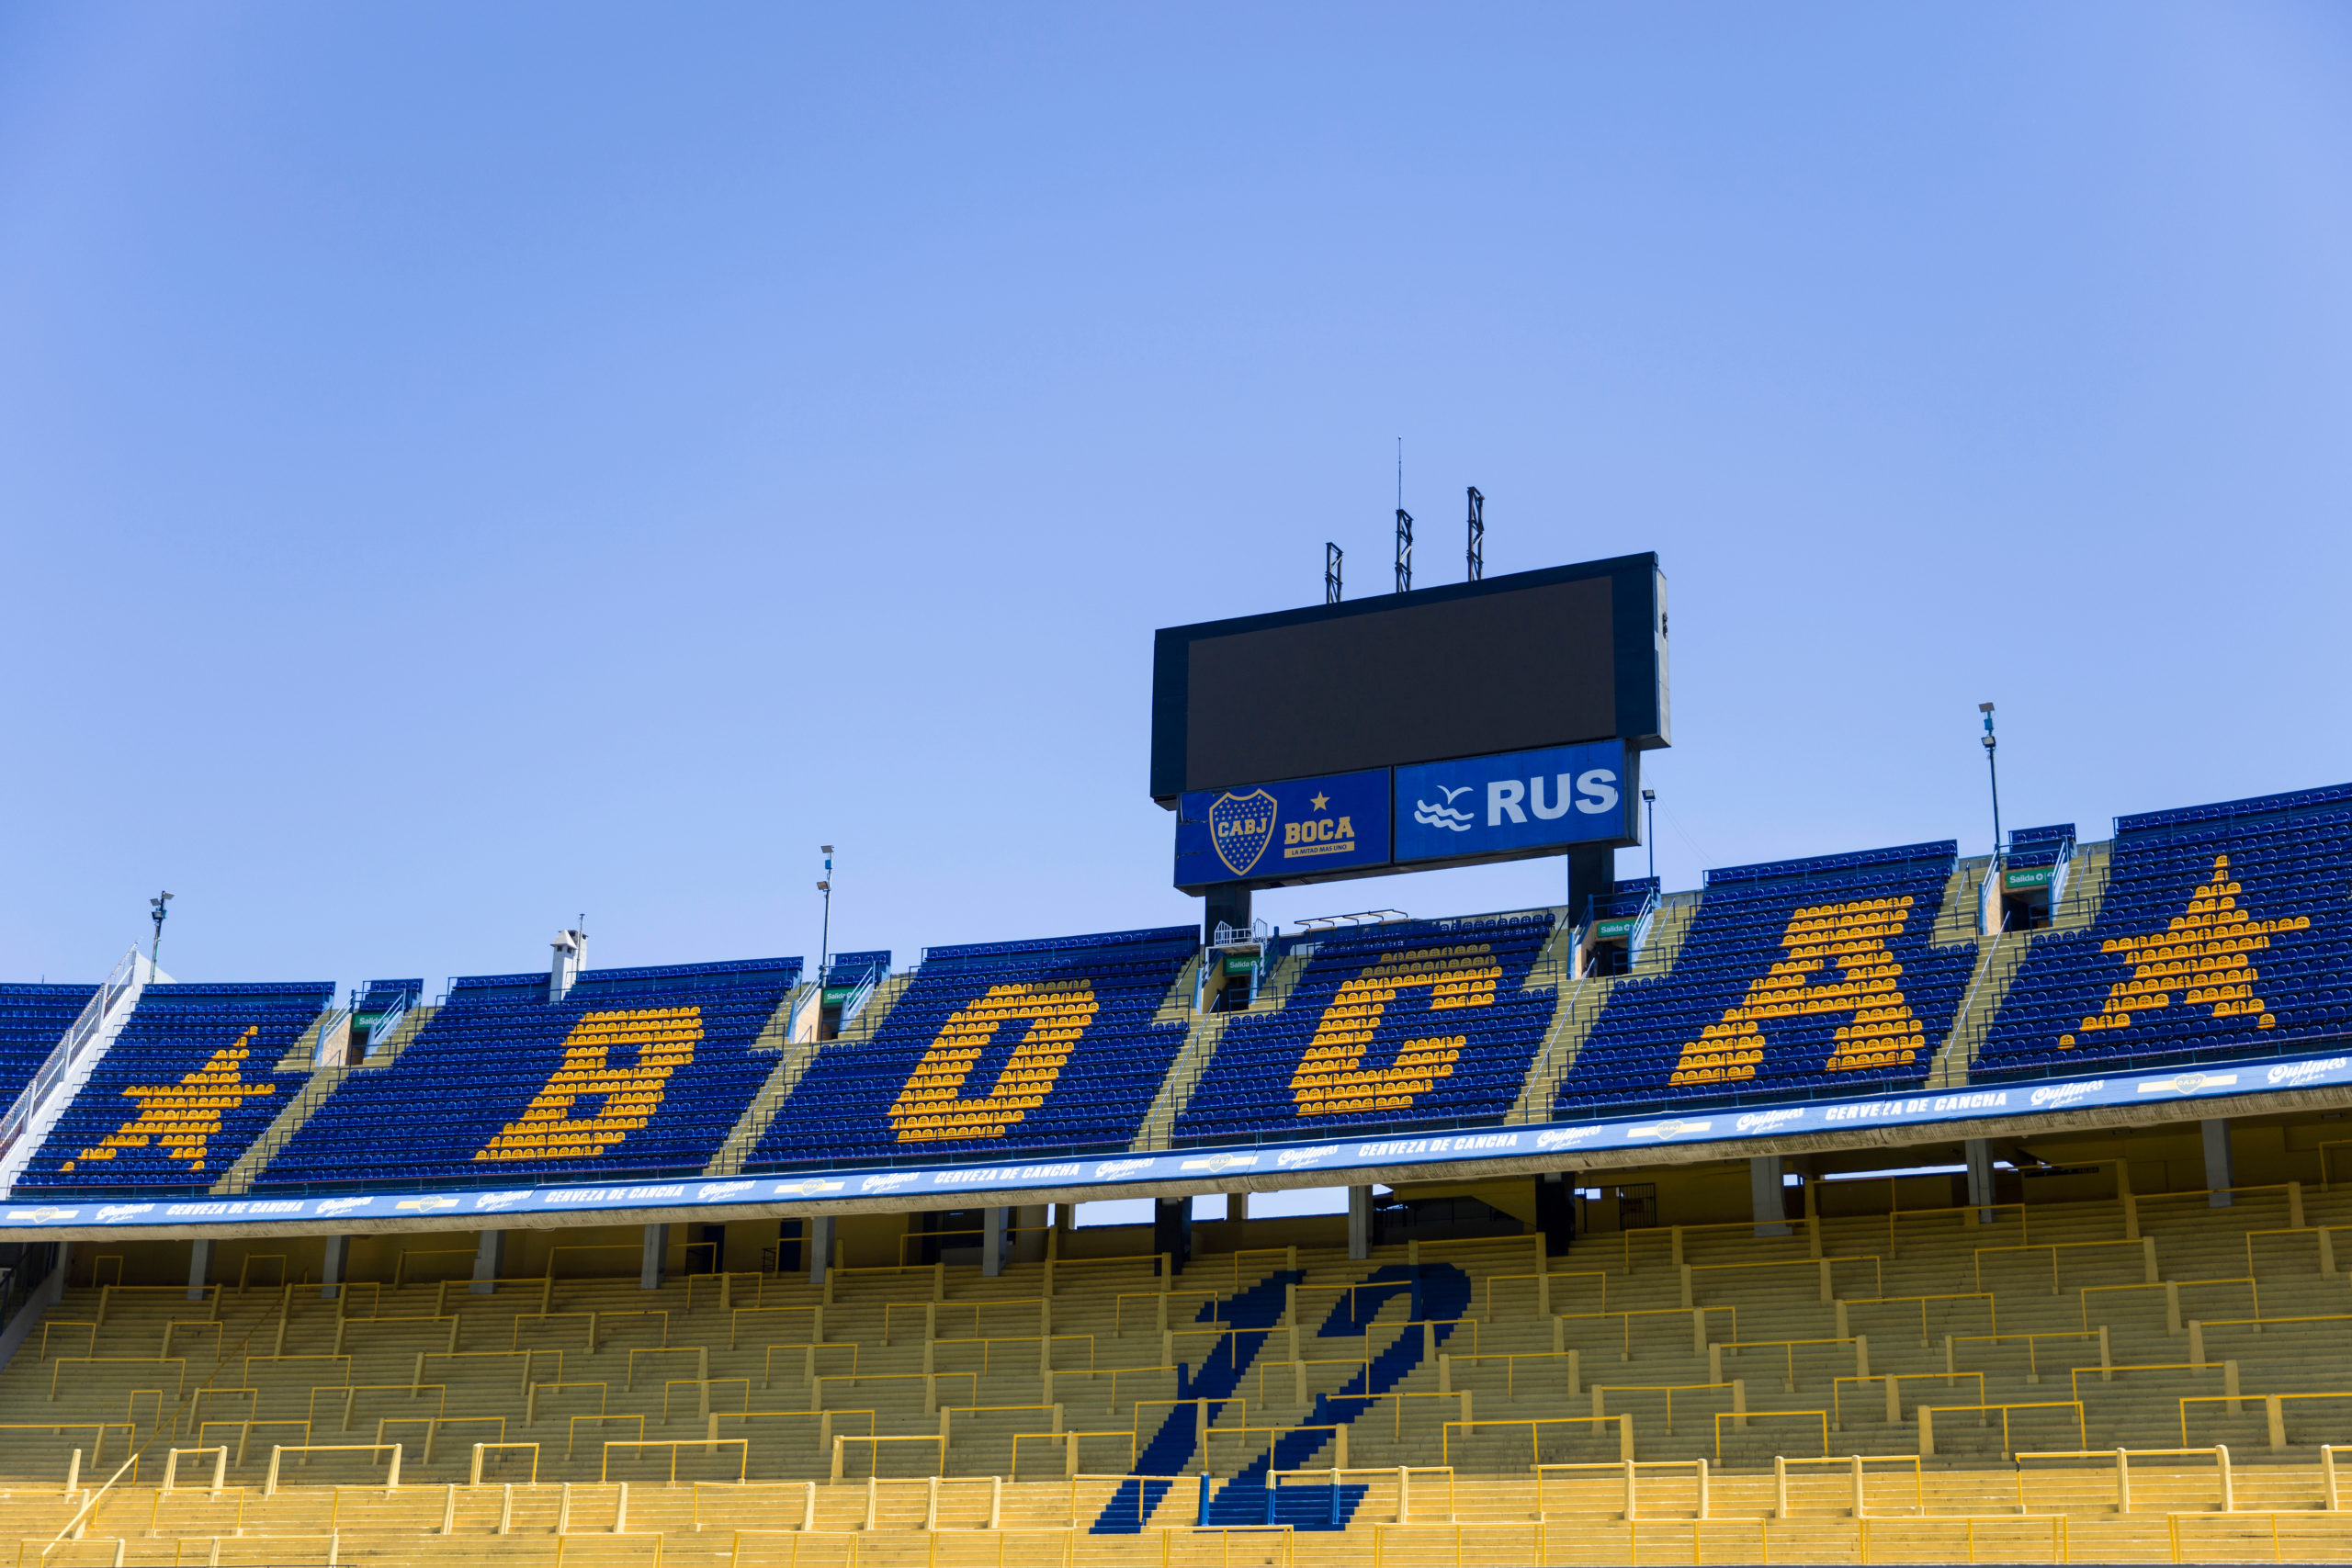 Tribuna de la cancha de Boca Juniors